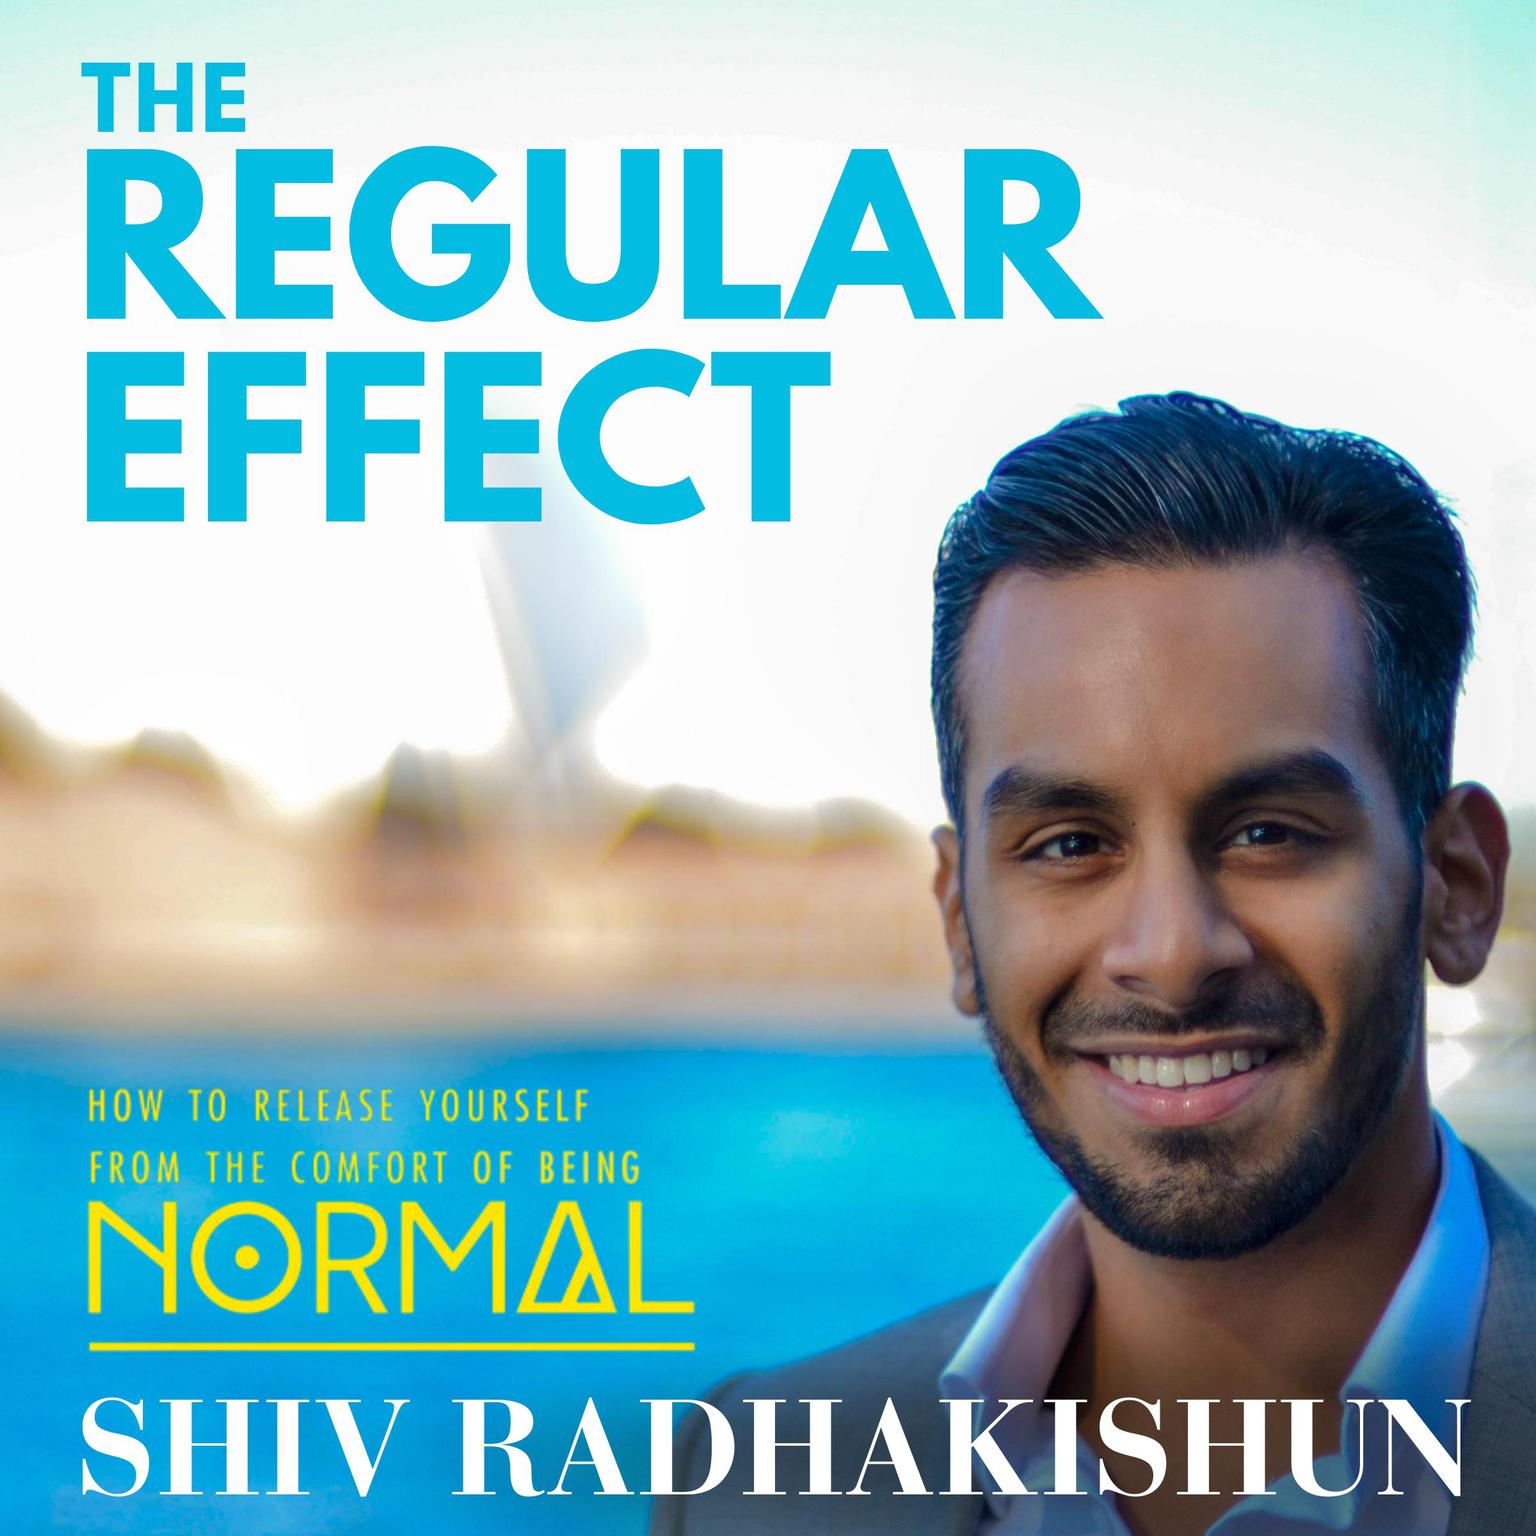 The Regular Effect Audiobook, by Shiv Radhakishun